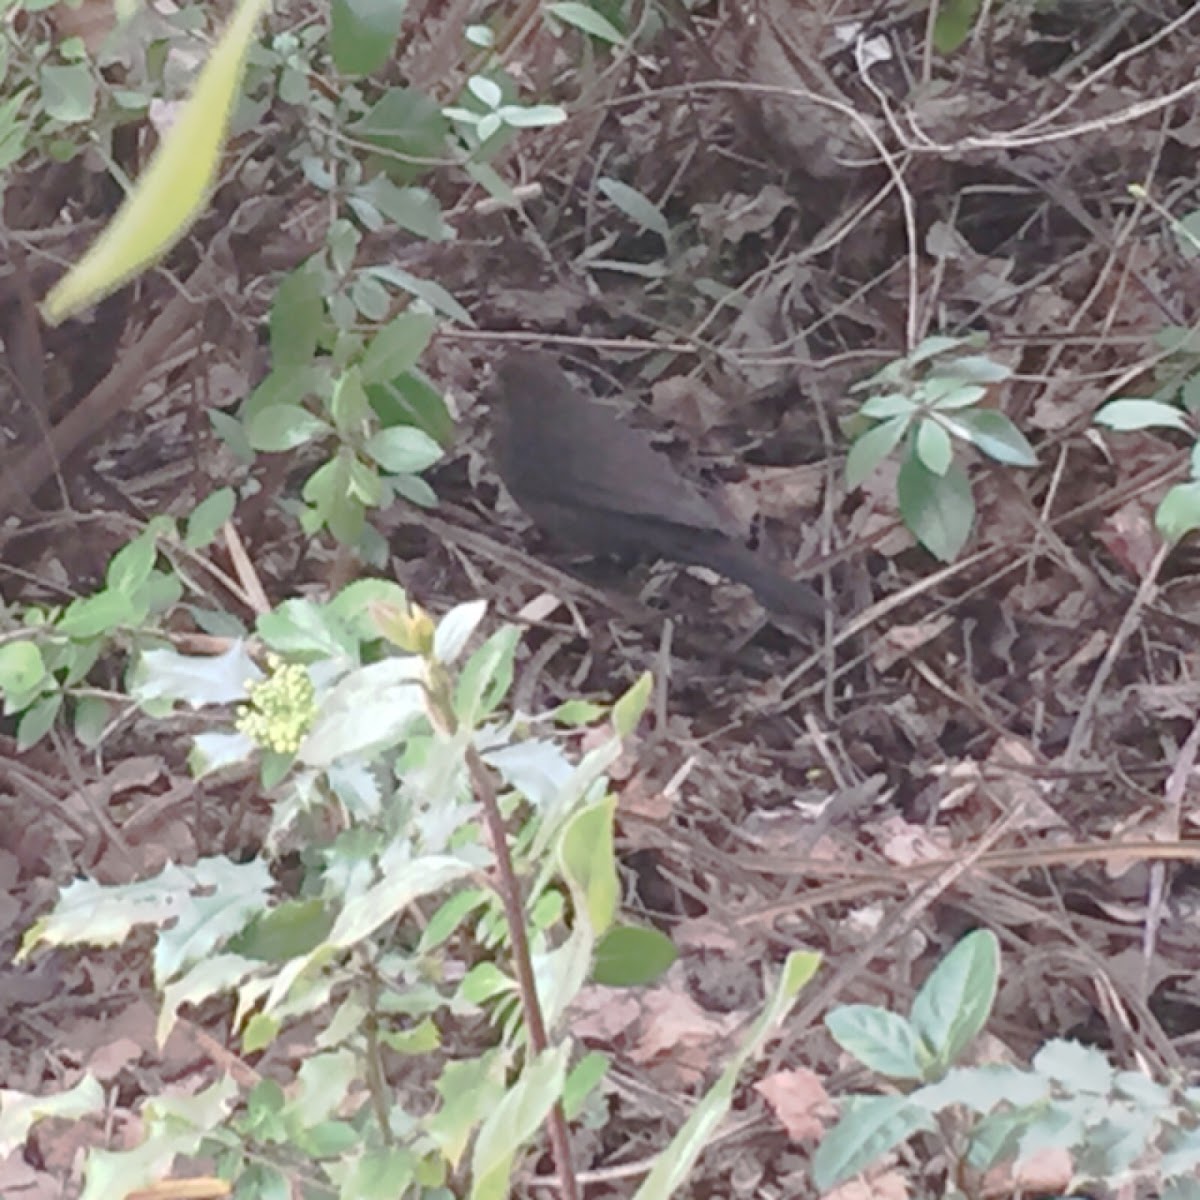 Common blackbird (female, nesting)